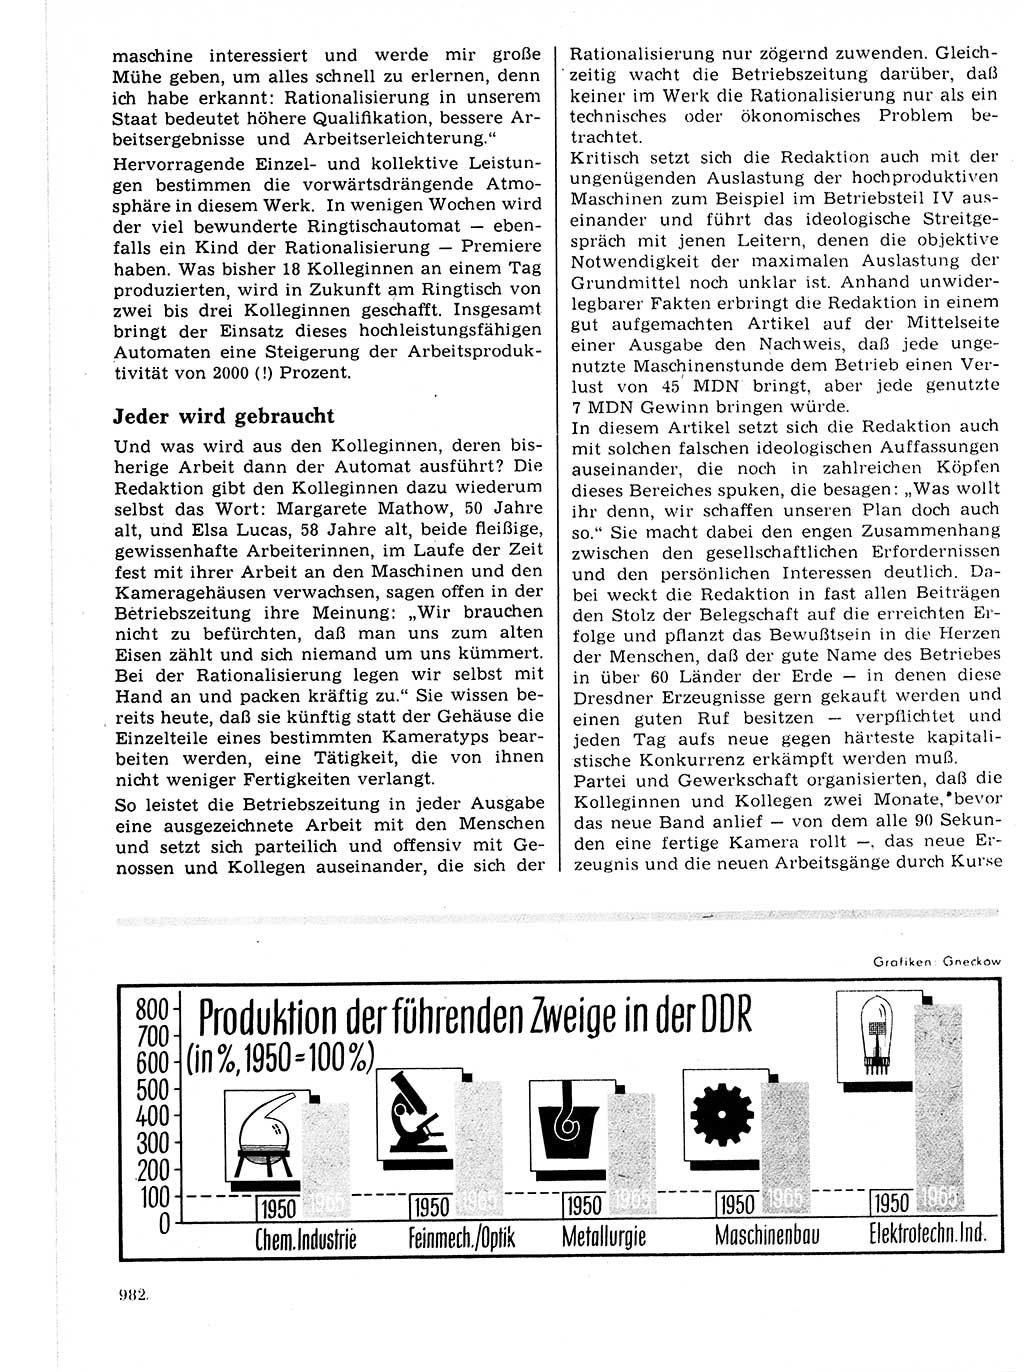 Neuer Weg (NW), Organ des Zentralkomitees (ZK) der SED (Sozialistische Einheitspartei Deutschlands) für Fragen des Parteilebens, 21. Jahrgang [Deutsche Demokratische Republik (DDR)] 1966, Seite 982 (NW ZK SED DDR 1966, S. 982)